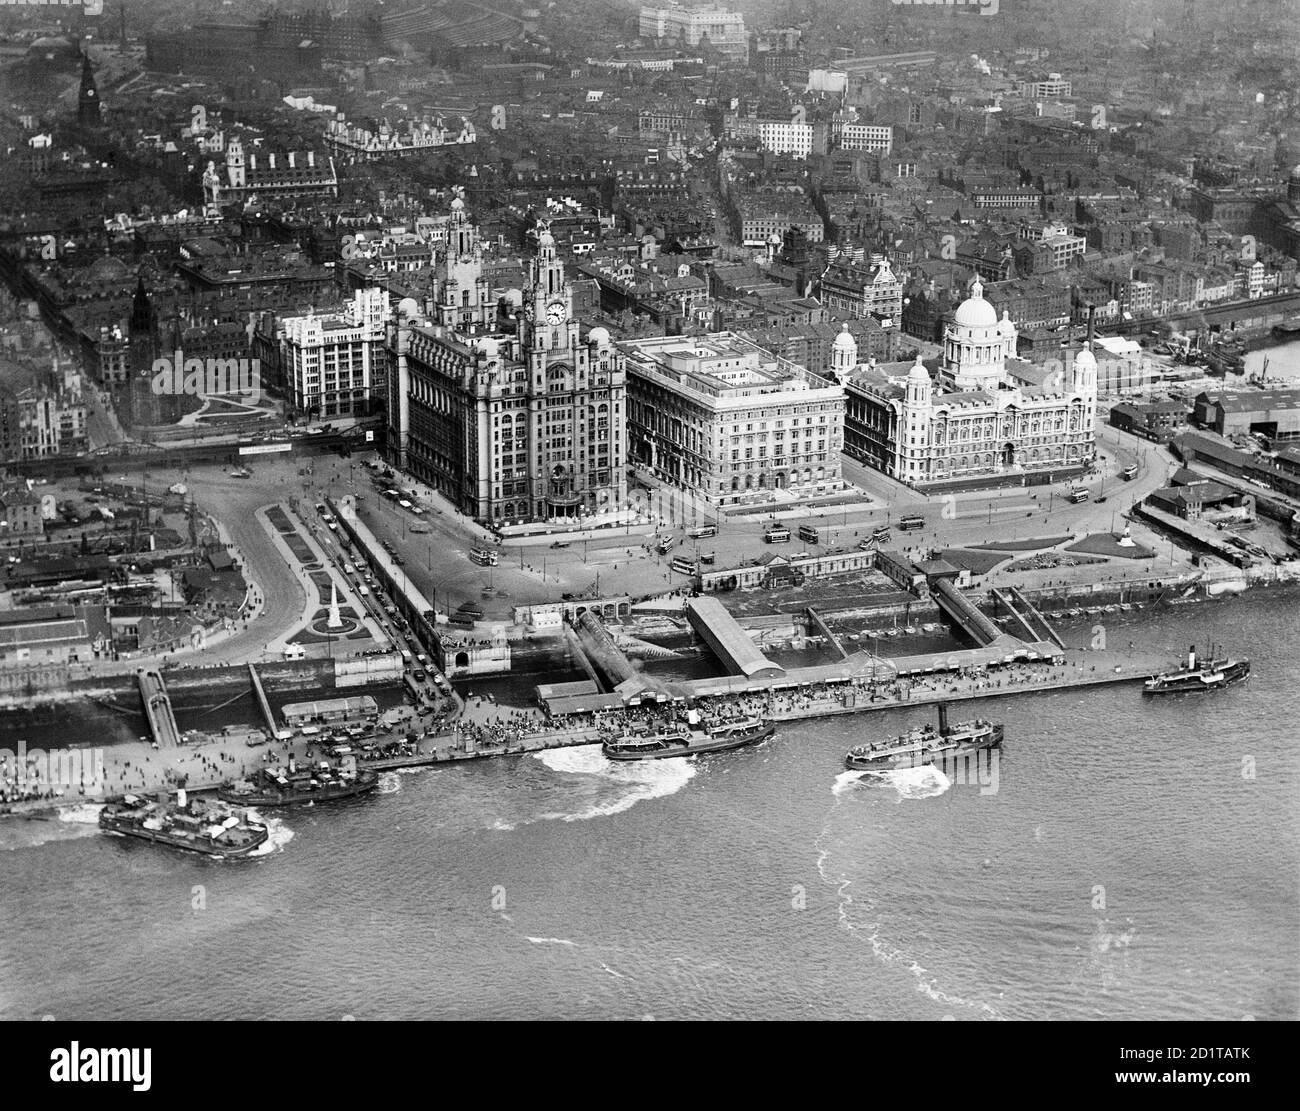 LIVERPOOL, Merseyside. Vue aérienne de Liverpool Pier Head avec de nombreux ferries et petits bateaux. Photographié en 1920. Collection Aerofilm (voir liens). Banque D'Images